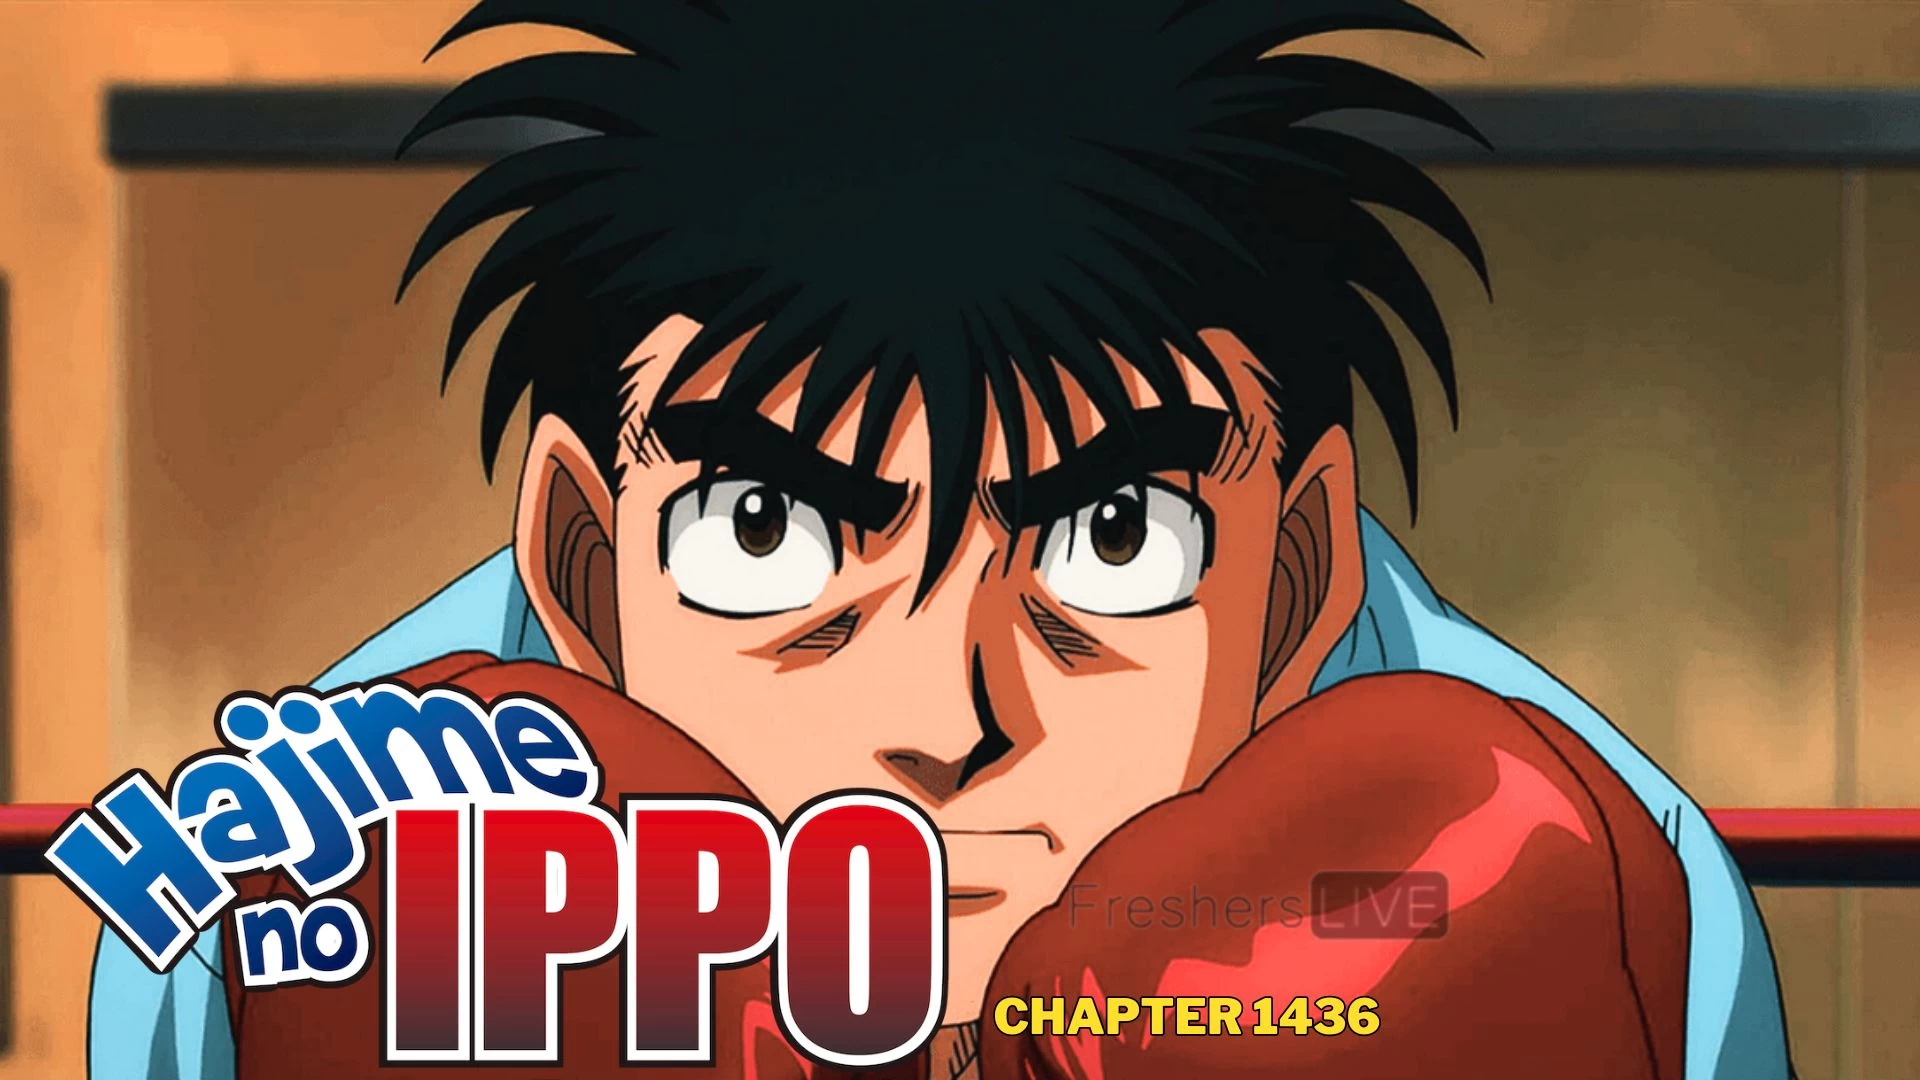 Hajime No Ippo Capítulo 1436 Spoiler, fecha de lanzamiento, escaneo sin procesar, cuenta regresiva y más